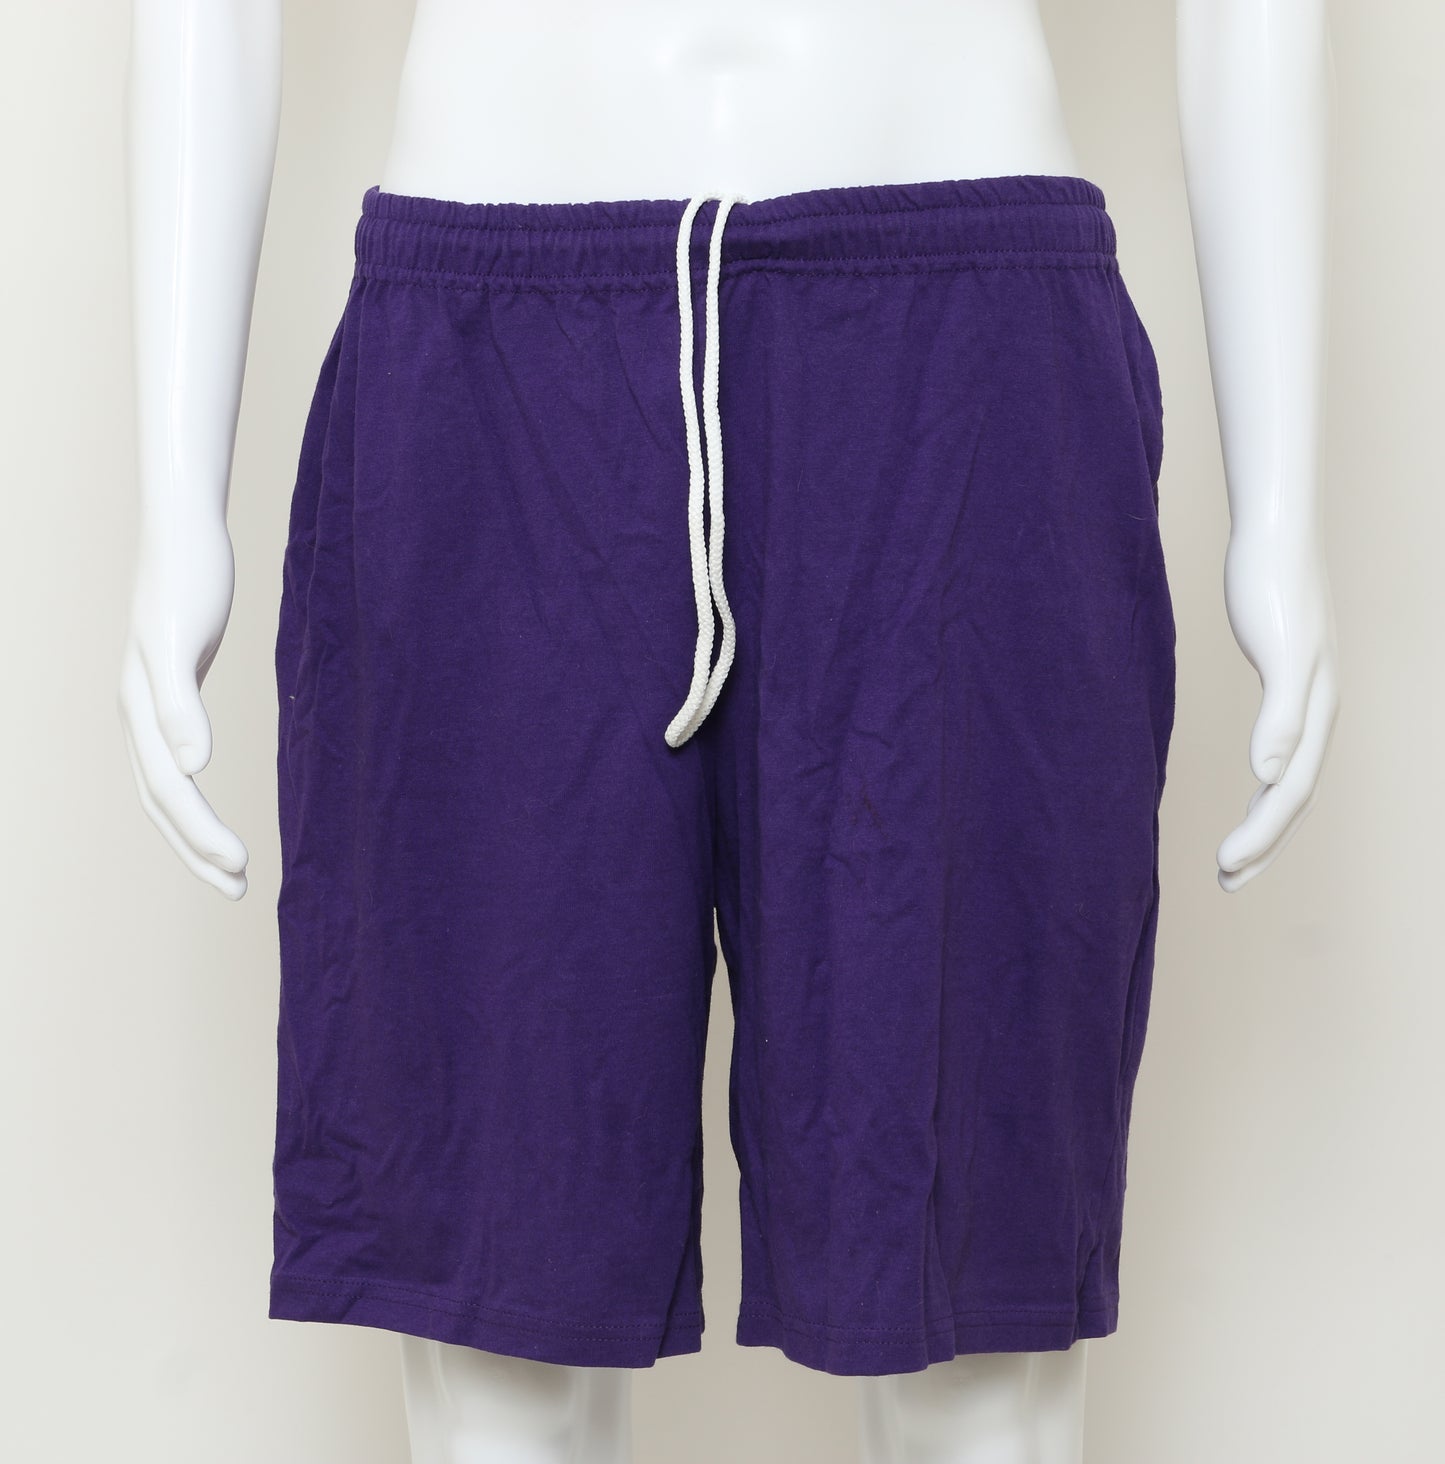 
                  
                    Hulk Eric Bana / Bruce Banner's Purple Shorts Production Worn Wardrobe - 2003
                  
                